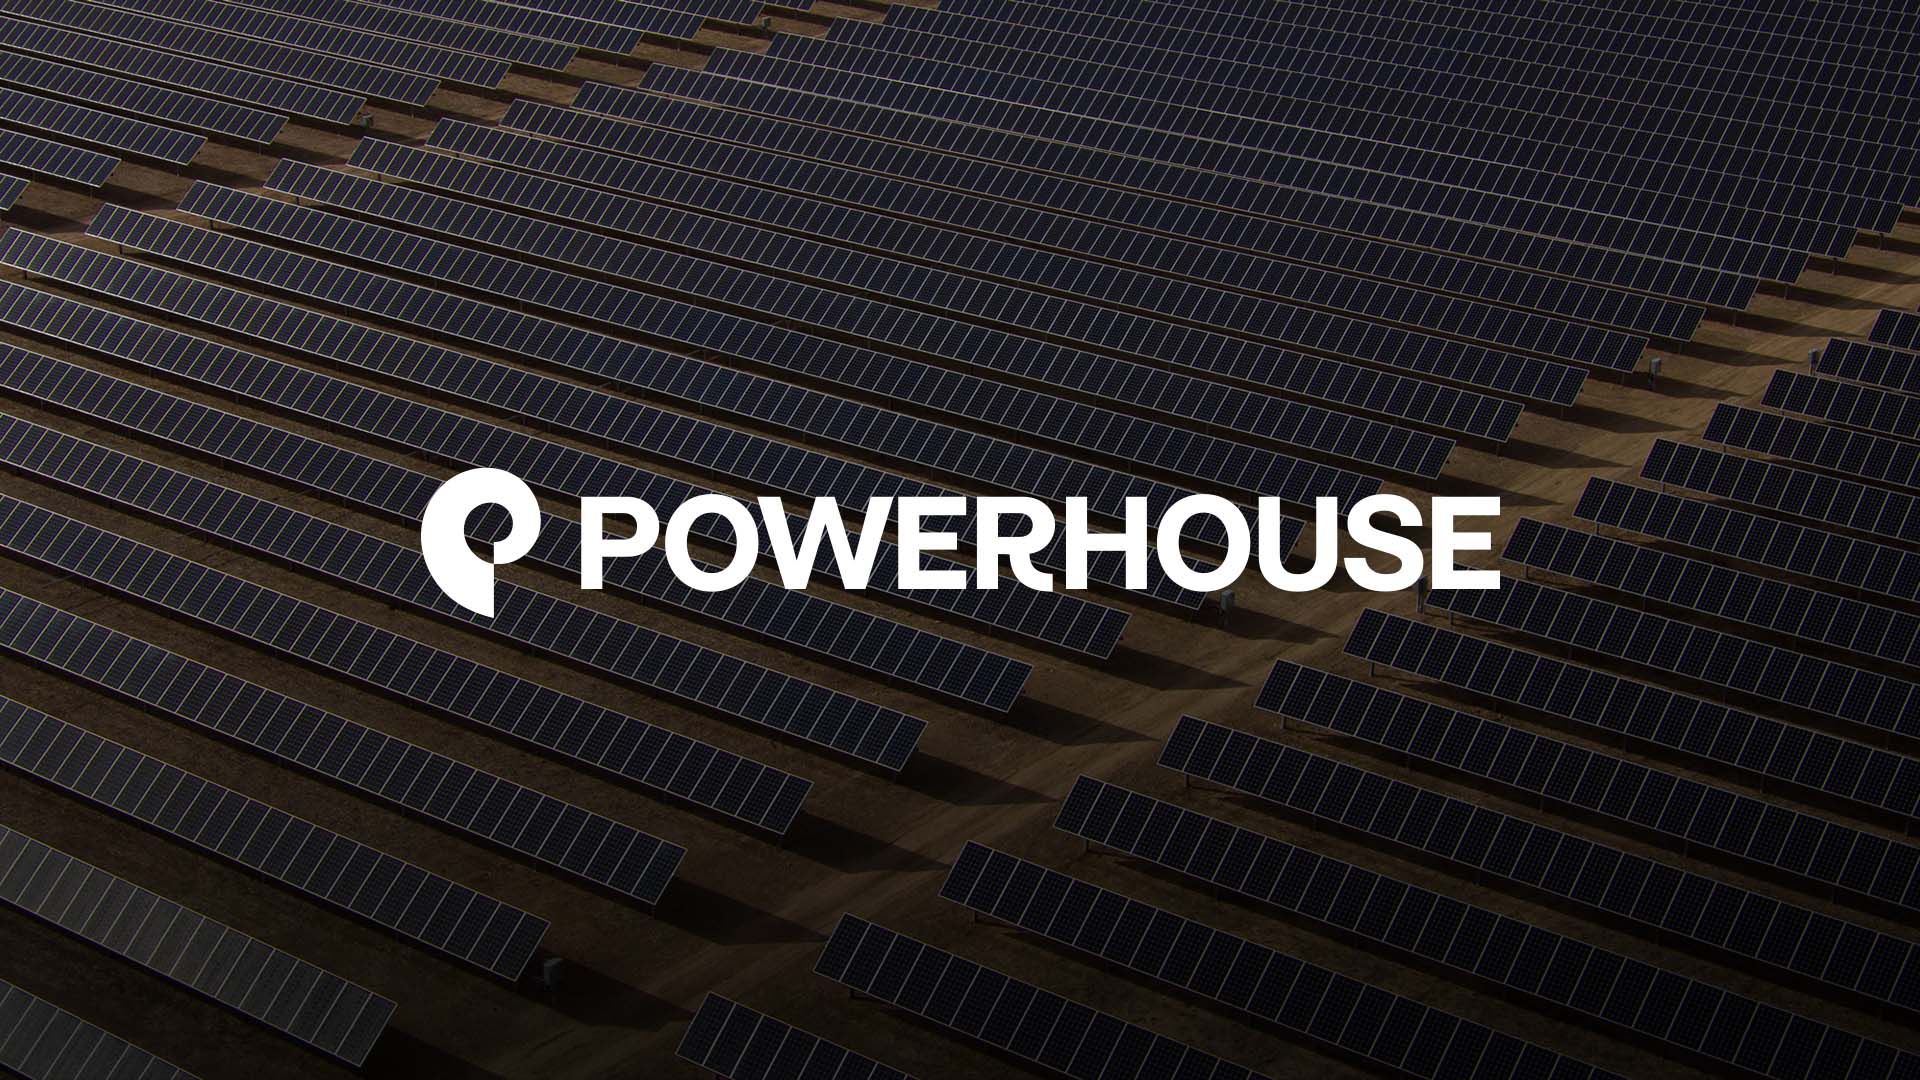 Powerhouse Logotype on Solar Panel Background